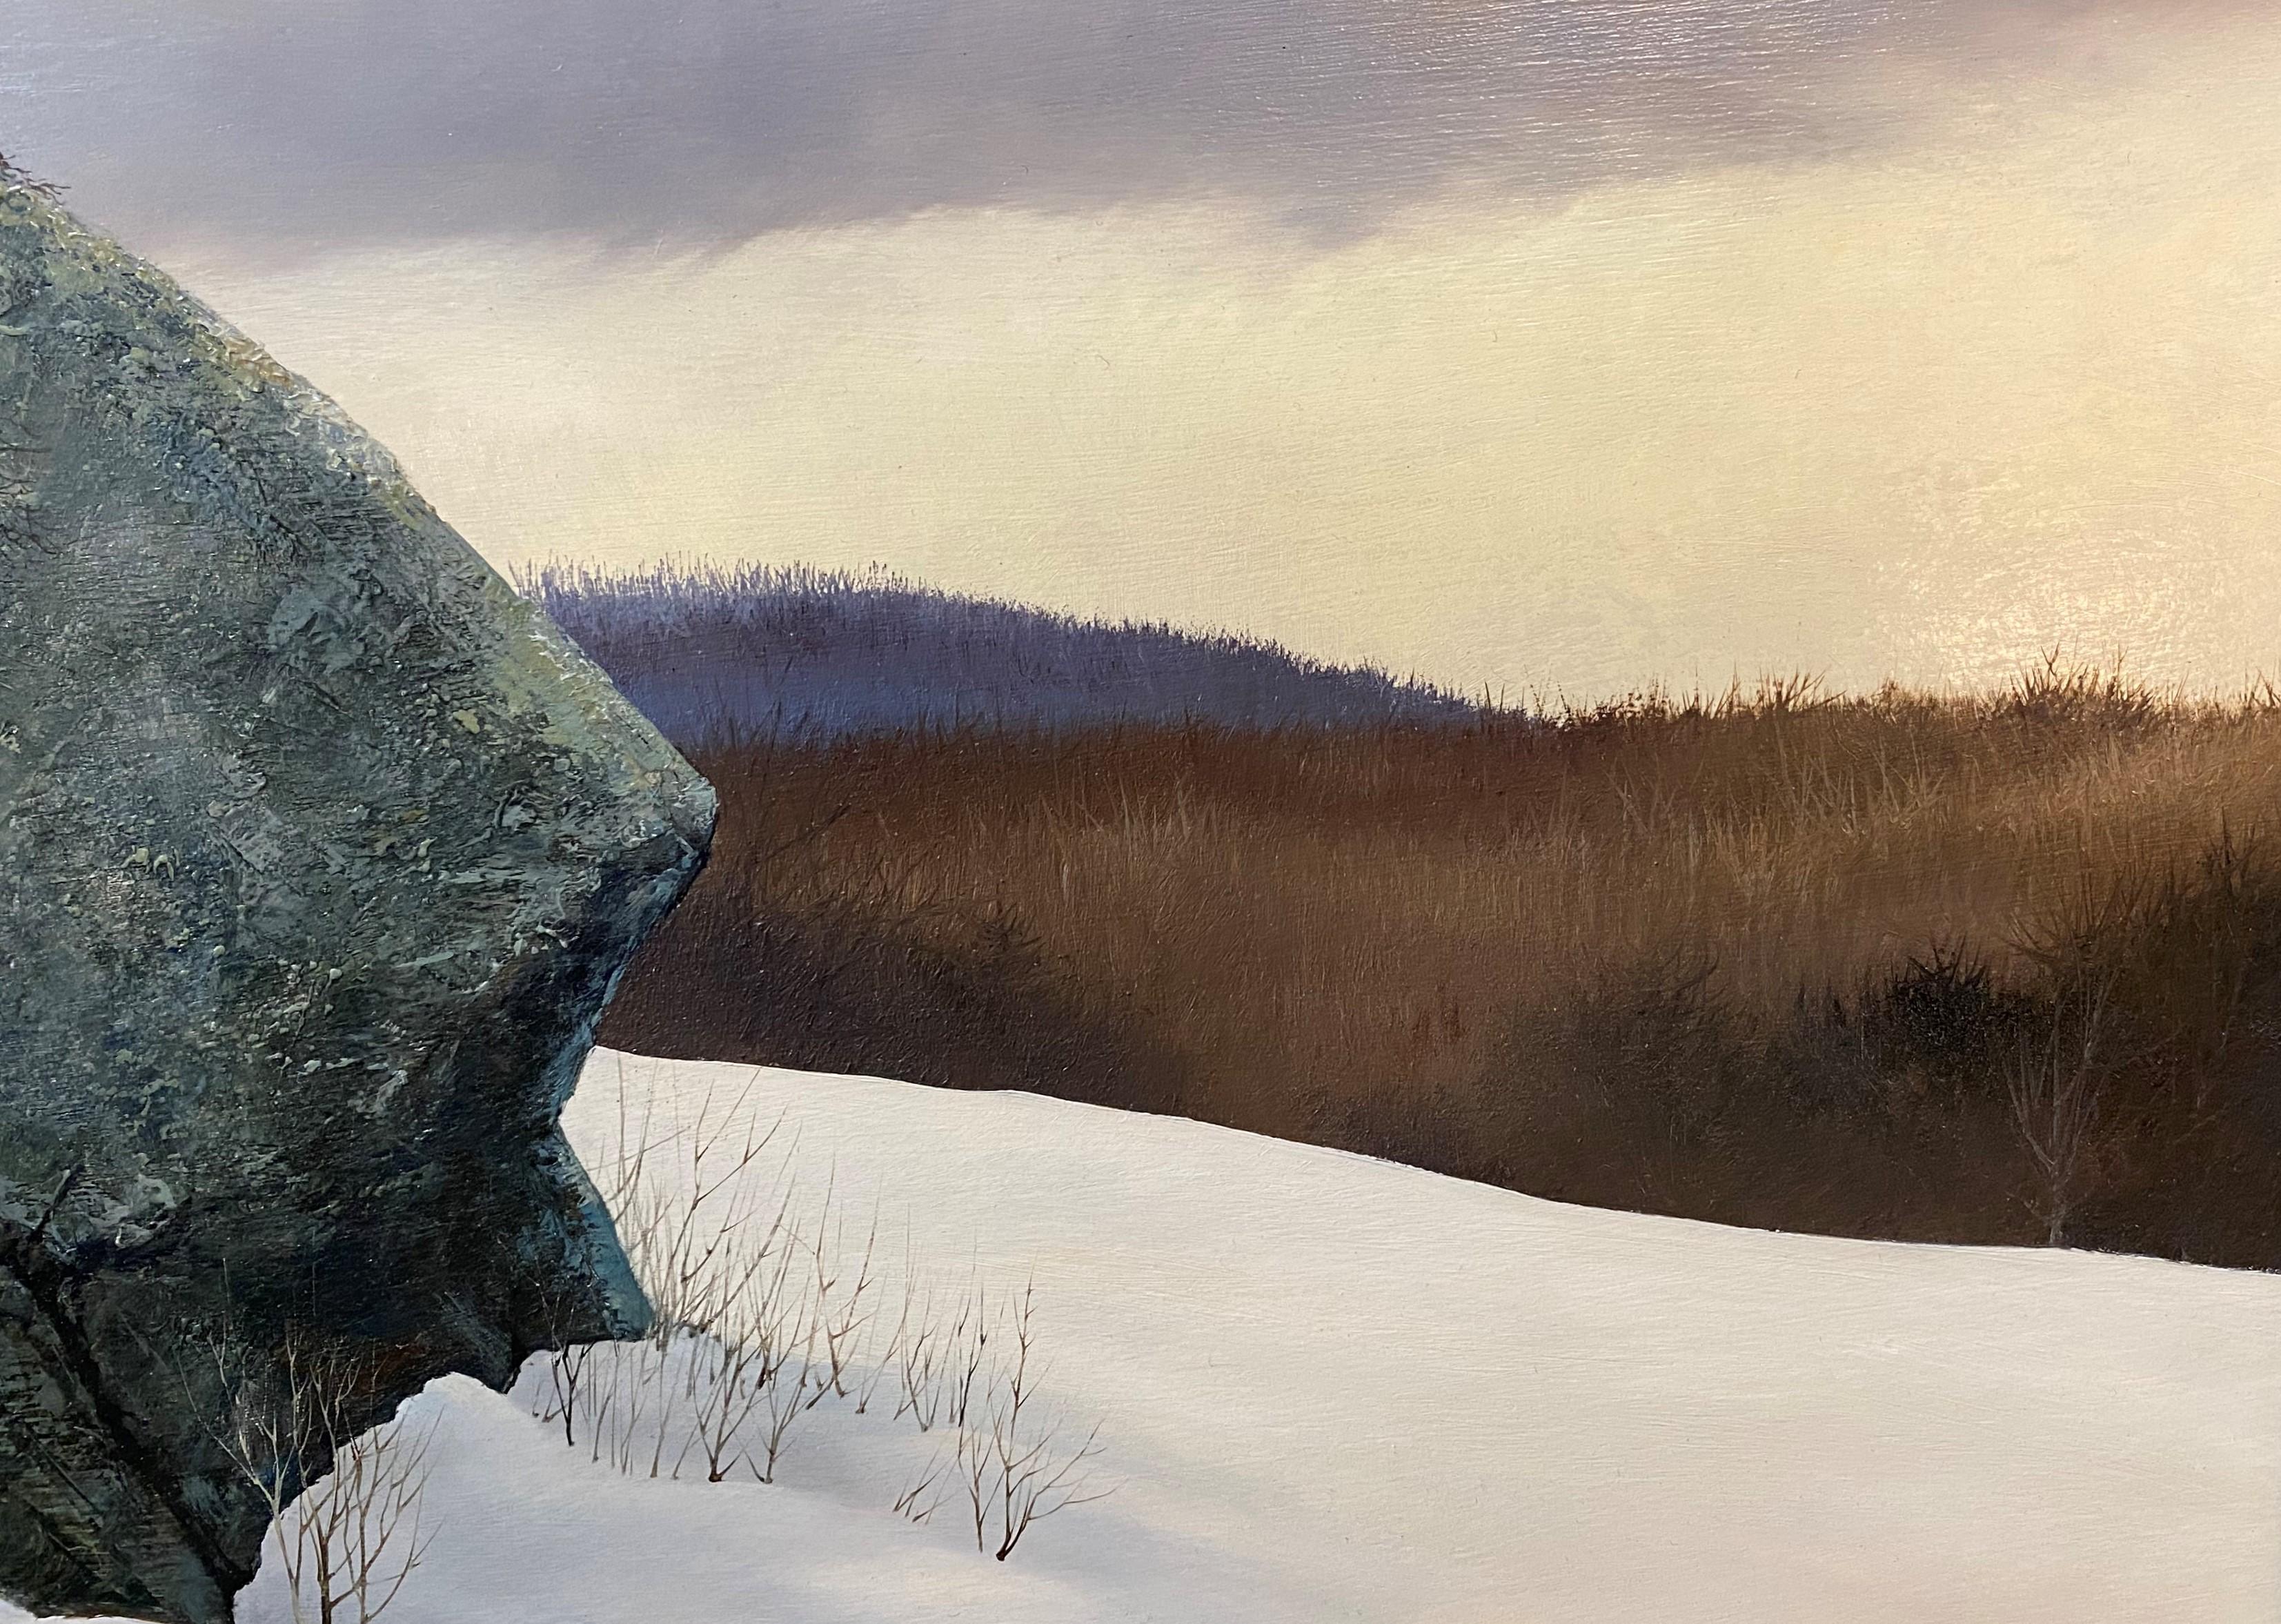 Rocks in Winter - Realist Art by Allen Hale Johnson